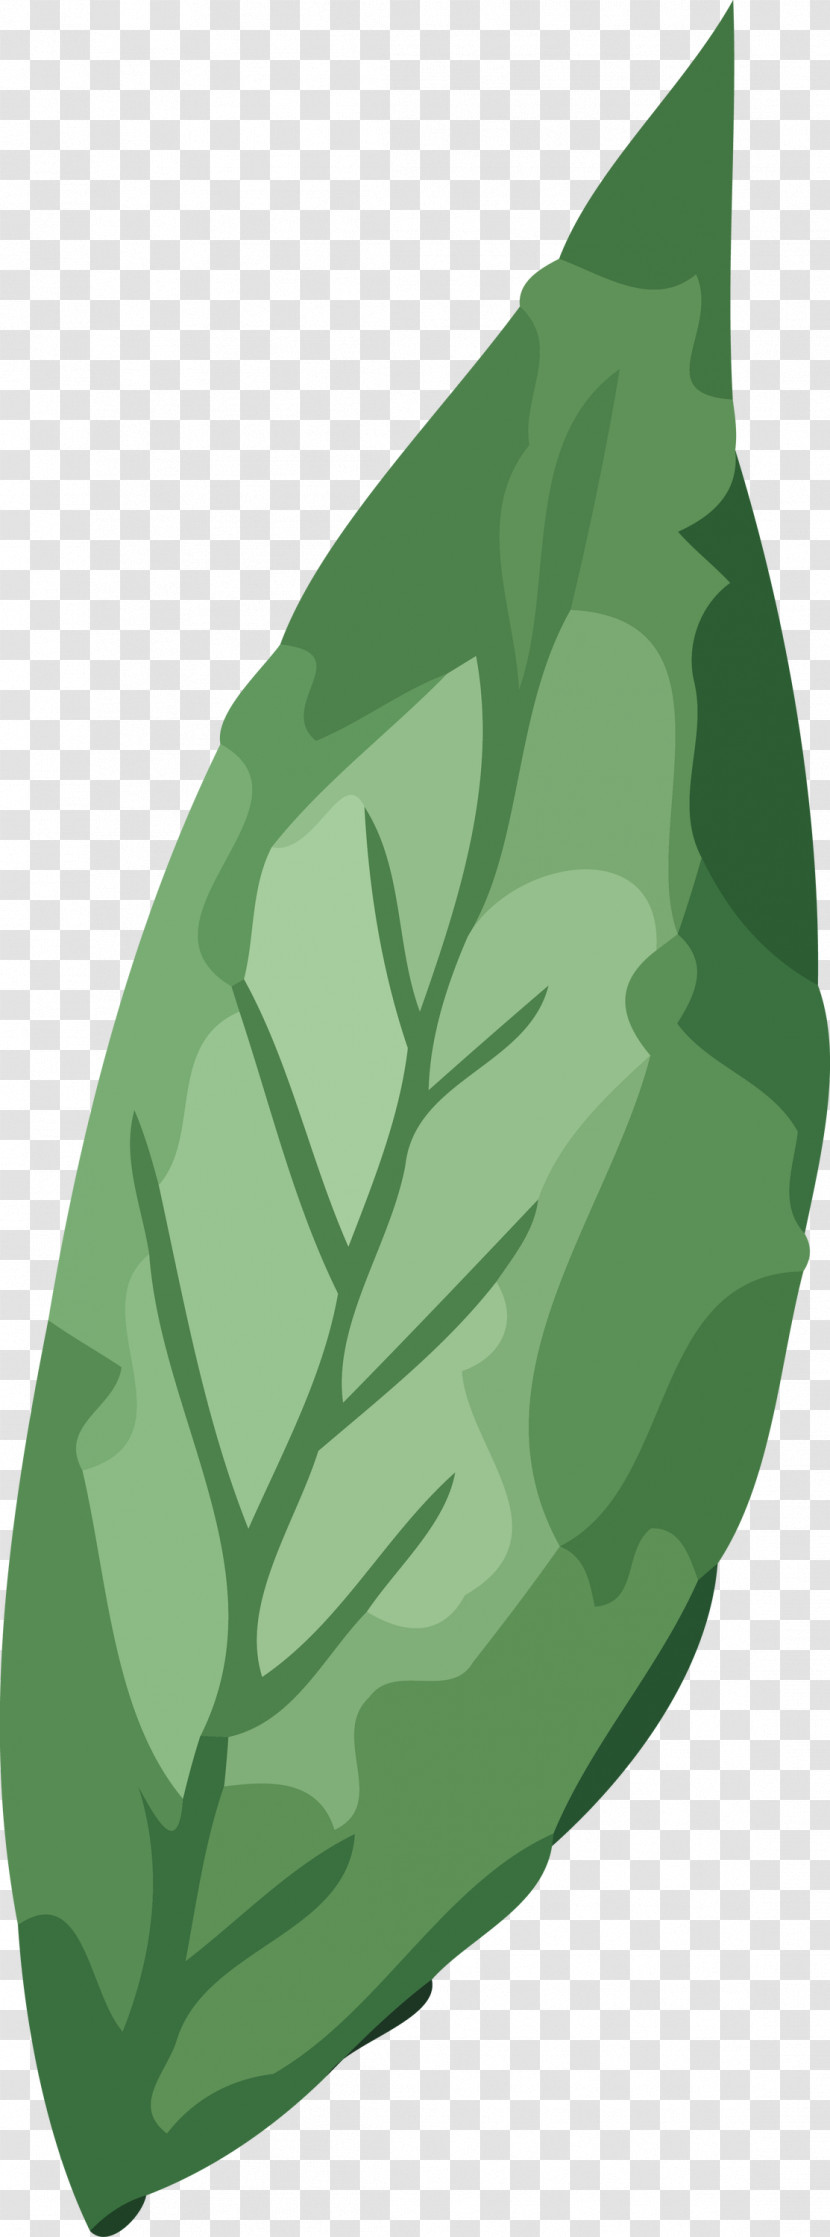 Leaf Vegetable Green Plant Structure Science Transparent PNG